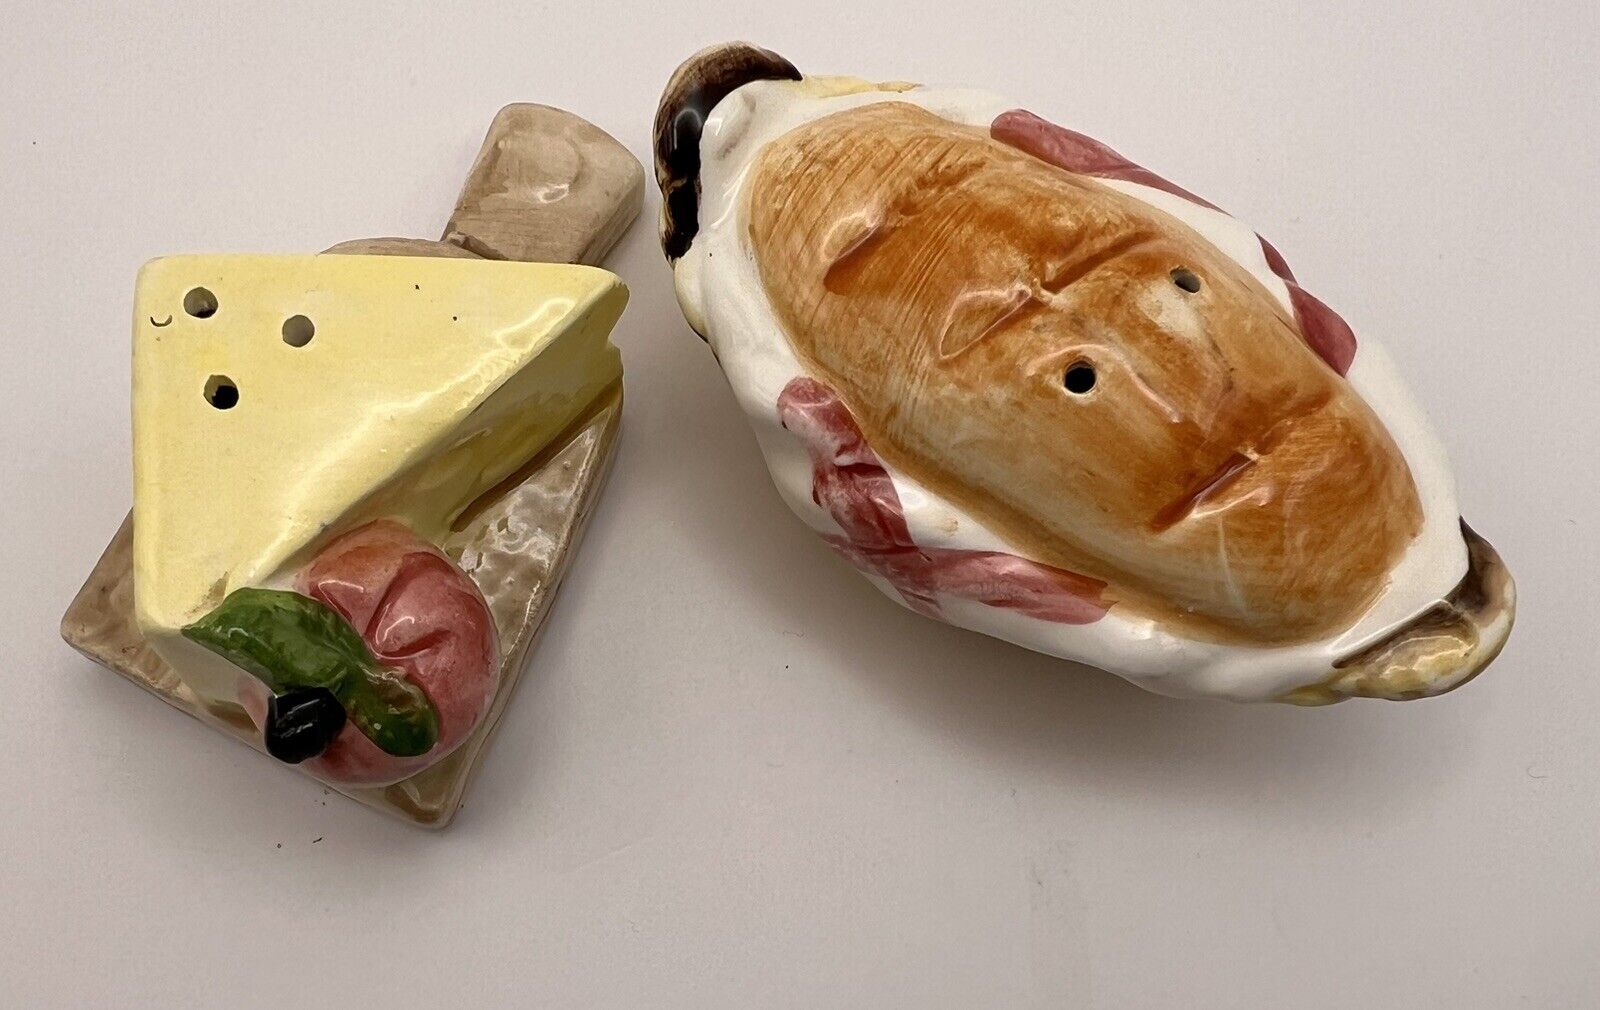 Vintage Japan Bread Cheese Board Salt & Pepper Shakers Food Kitsch Ceramic